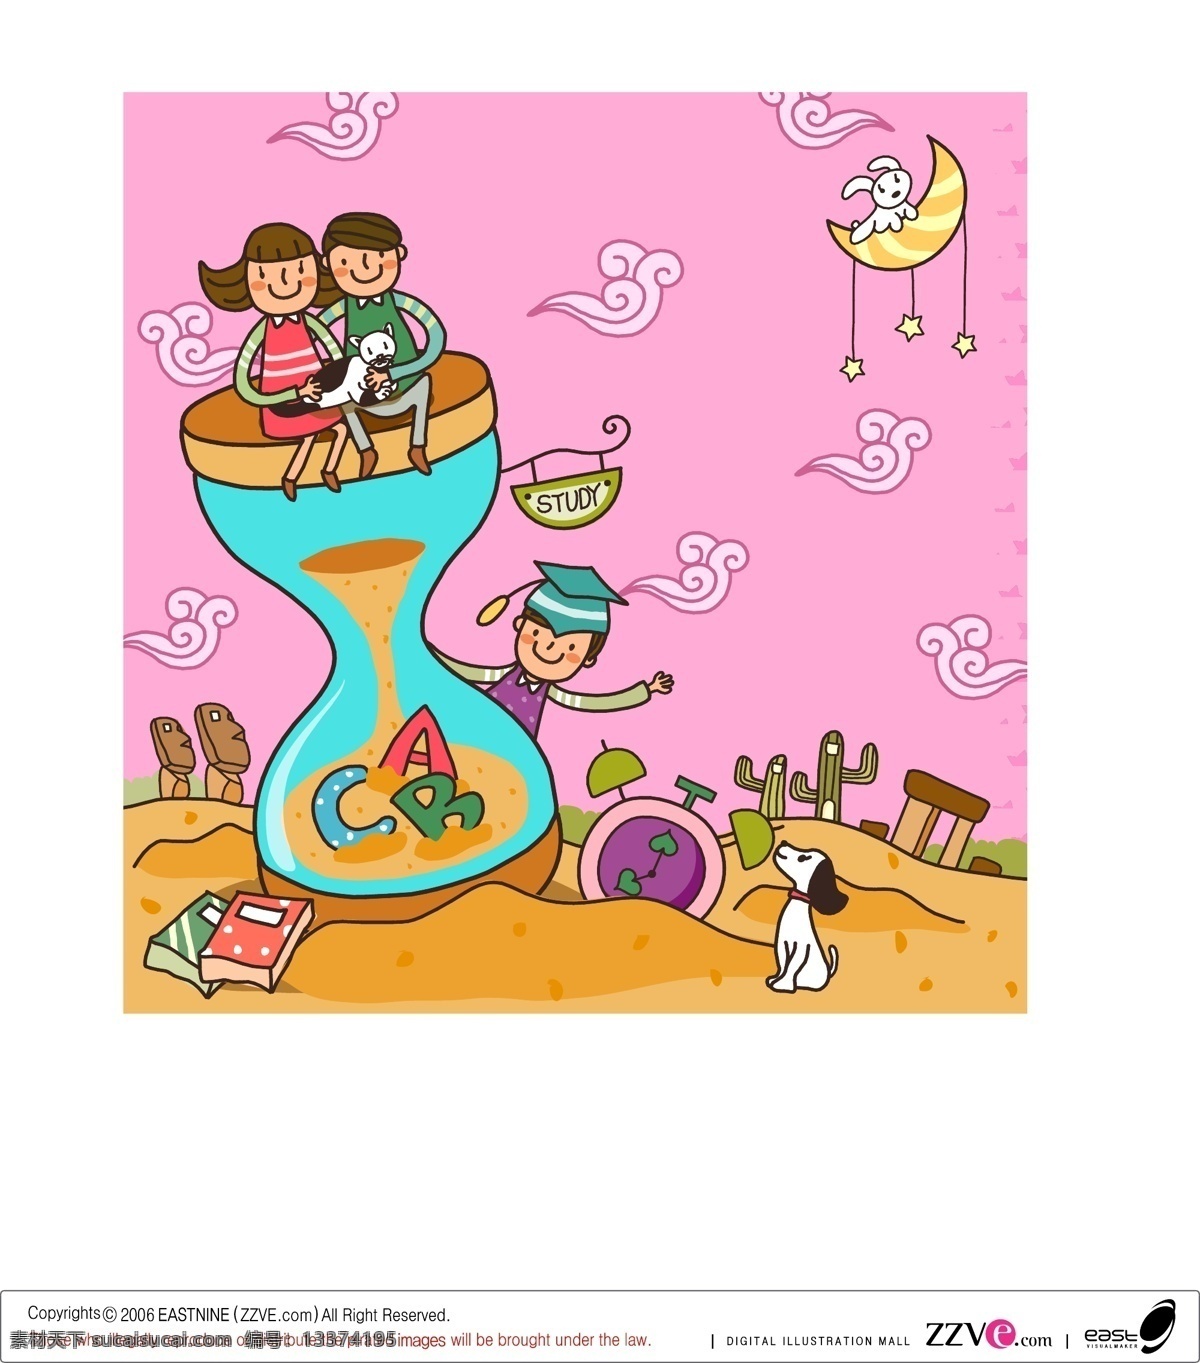 爱情 儿童 儿童插画 儿童绘画 儿童世界 卡通插画 卡通人物 卡通设计 沙漏矢量素材 沙漏模板下载 沙漏 时间 情侣 遨游天空 沙漠 快乐儿童 快乐时光 卡通形象 幼儿绘画 矢量 插画集